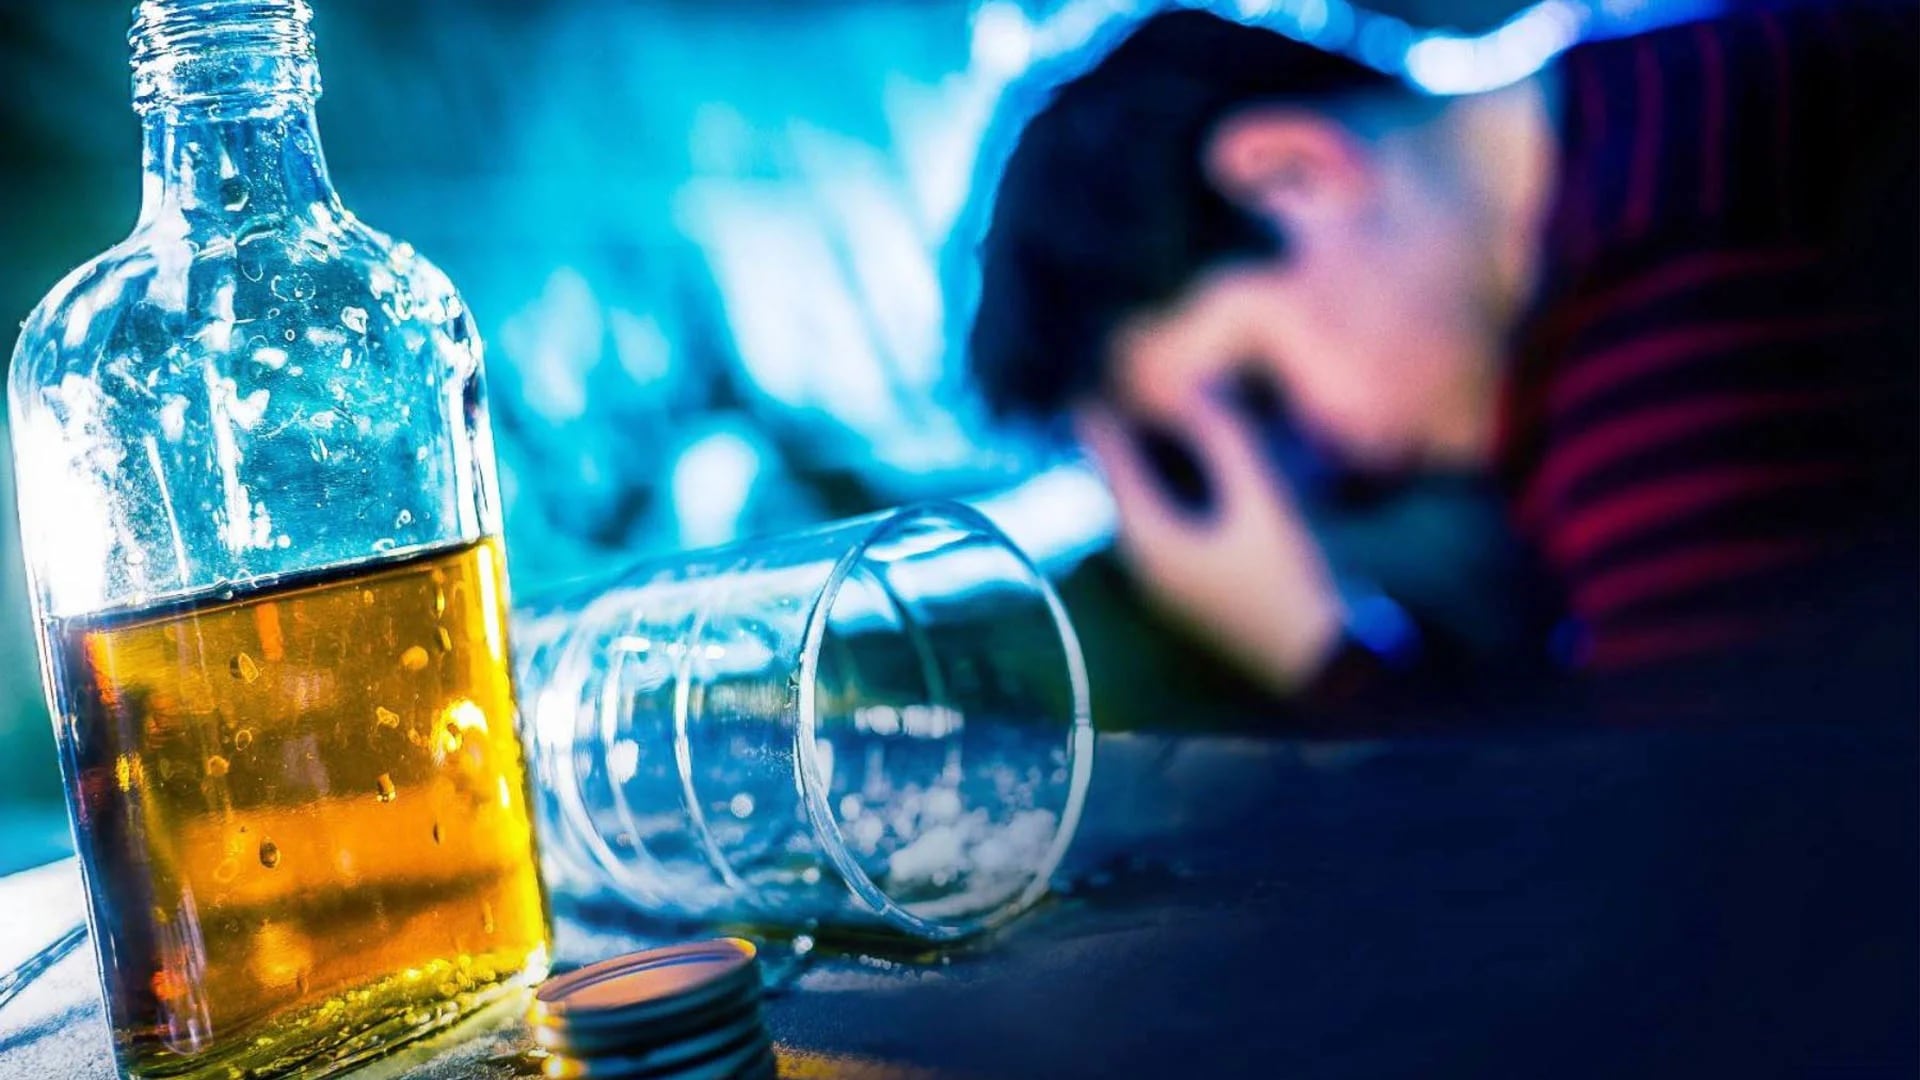 El consumo excesivo de alcohol puede afectar el sistema nervioso, trastornos del pensamiento, demencia y pérdida de la memoria a corto plazo (Andina)